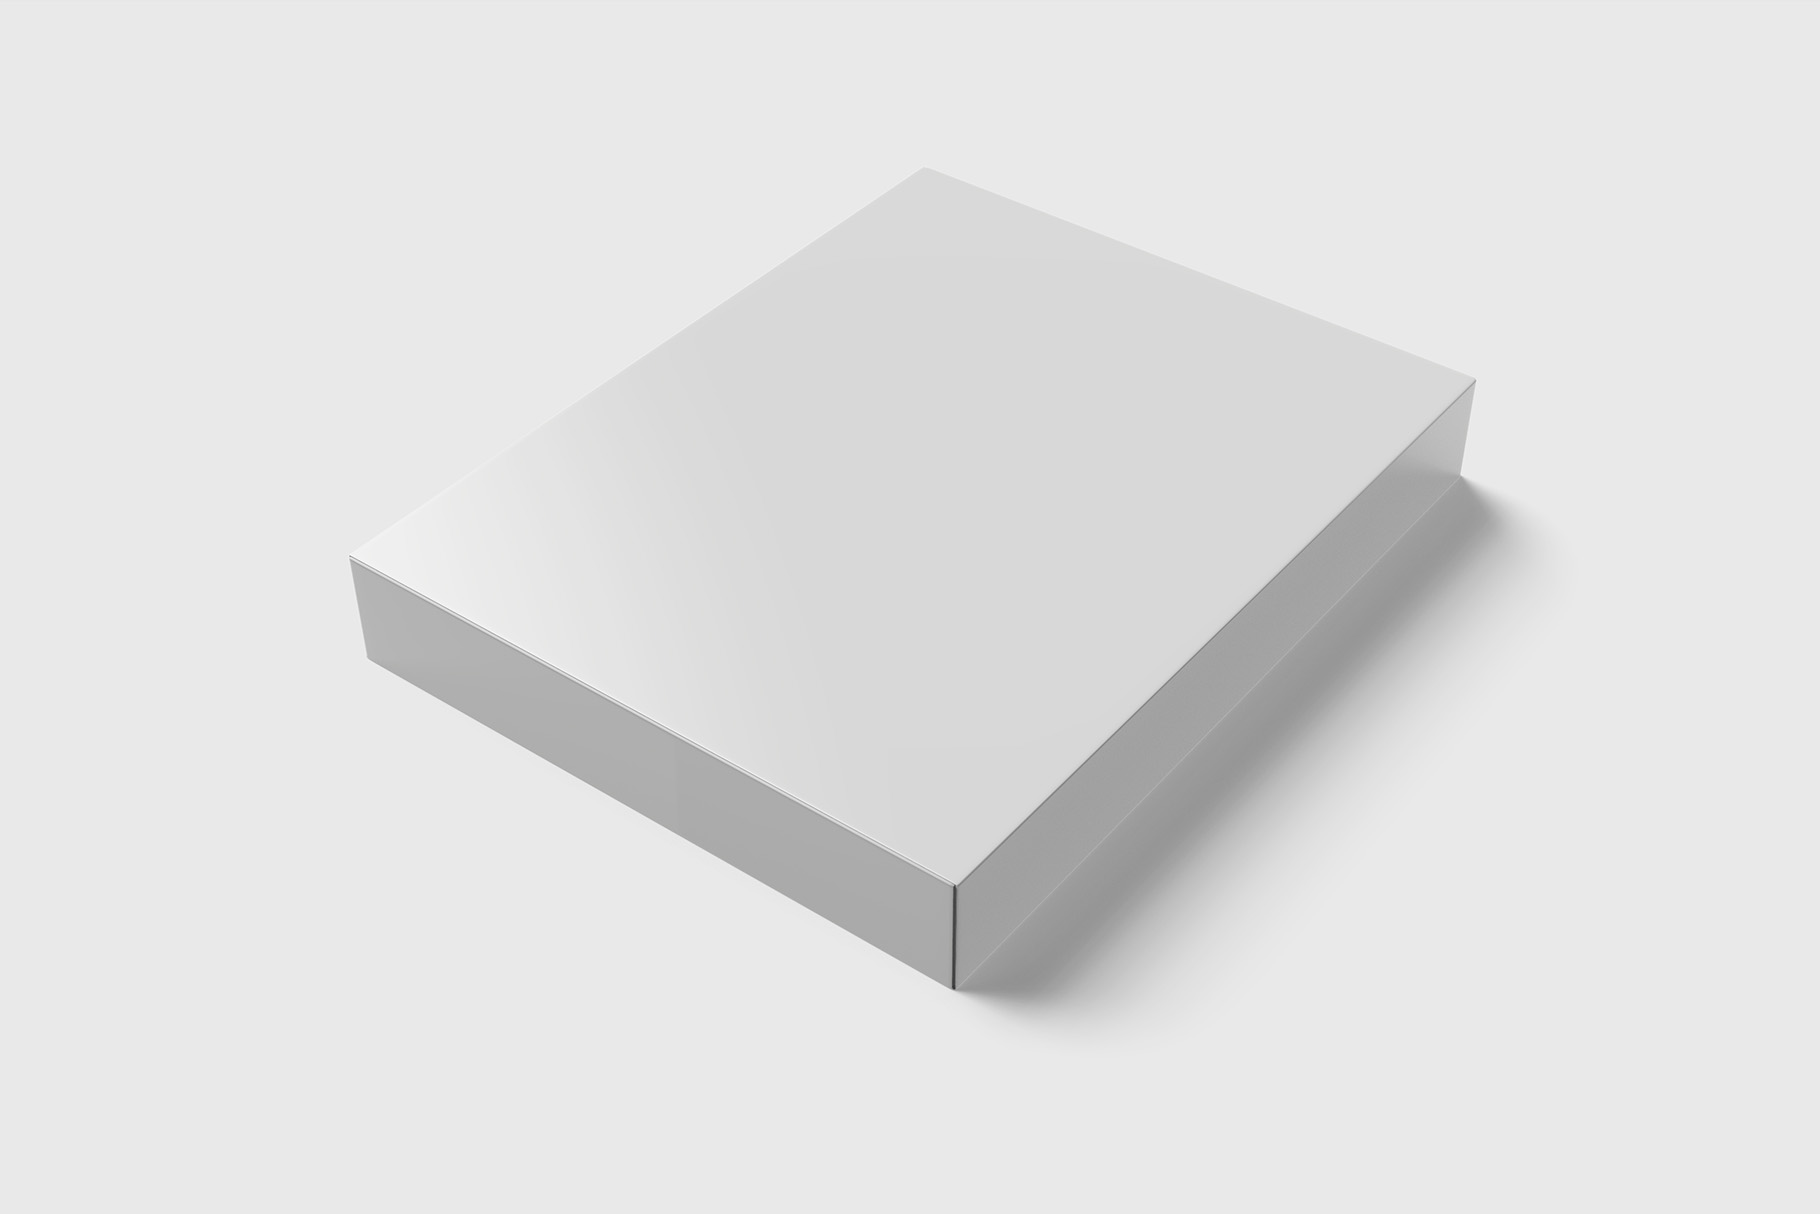 Download Flat Carton Box Mockup - 8 views